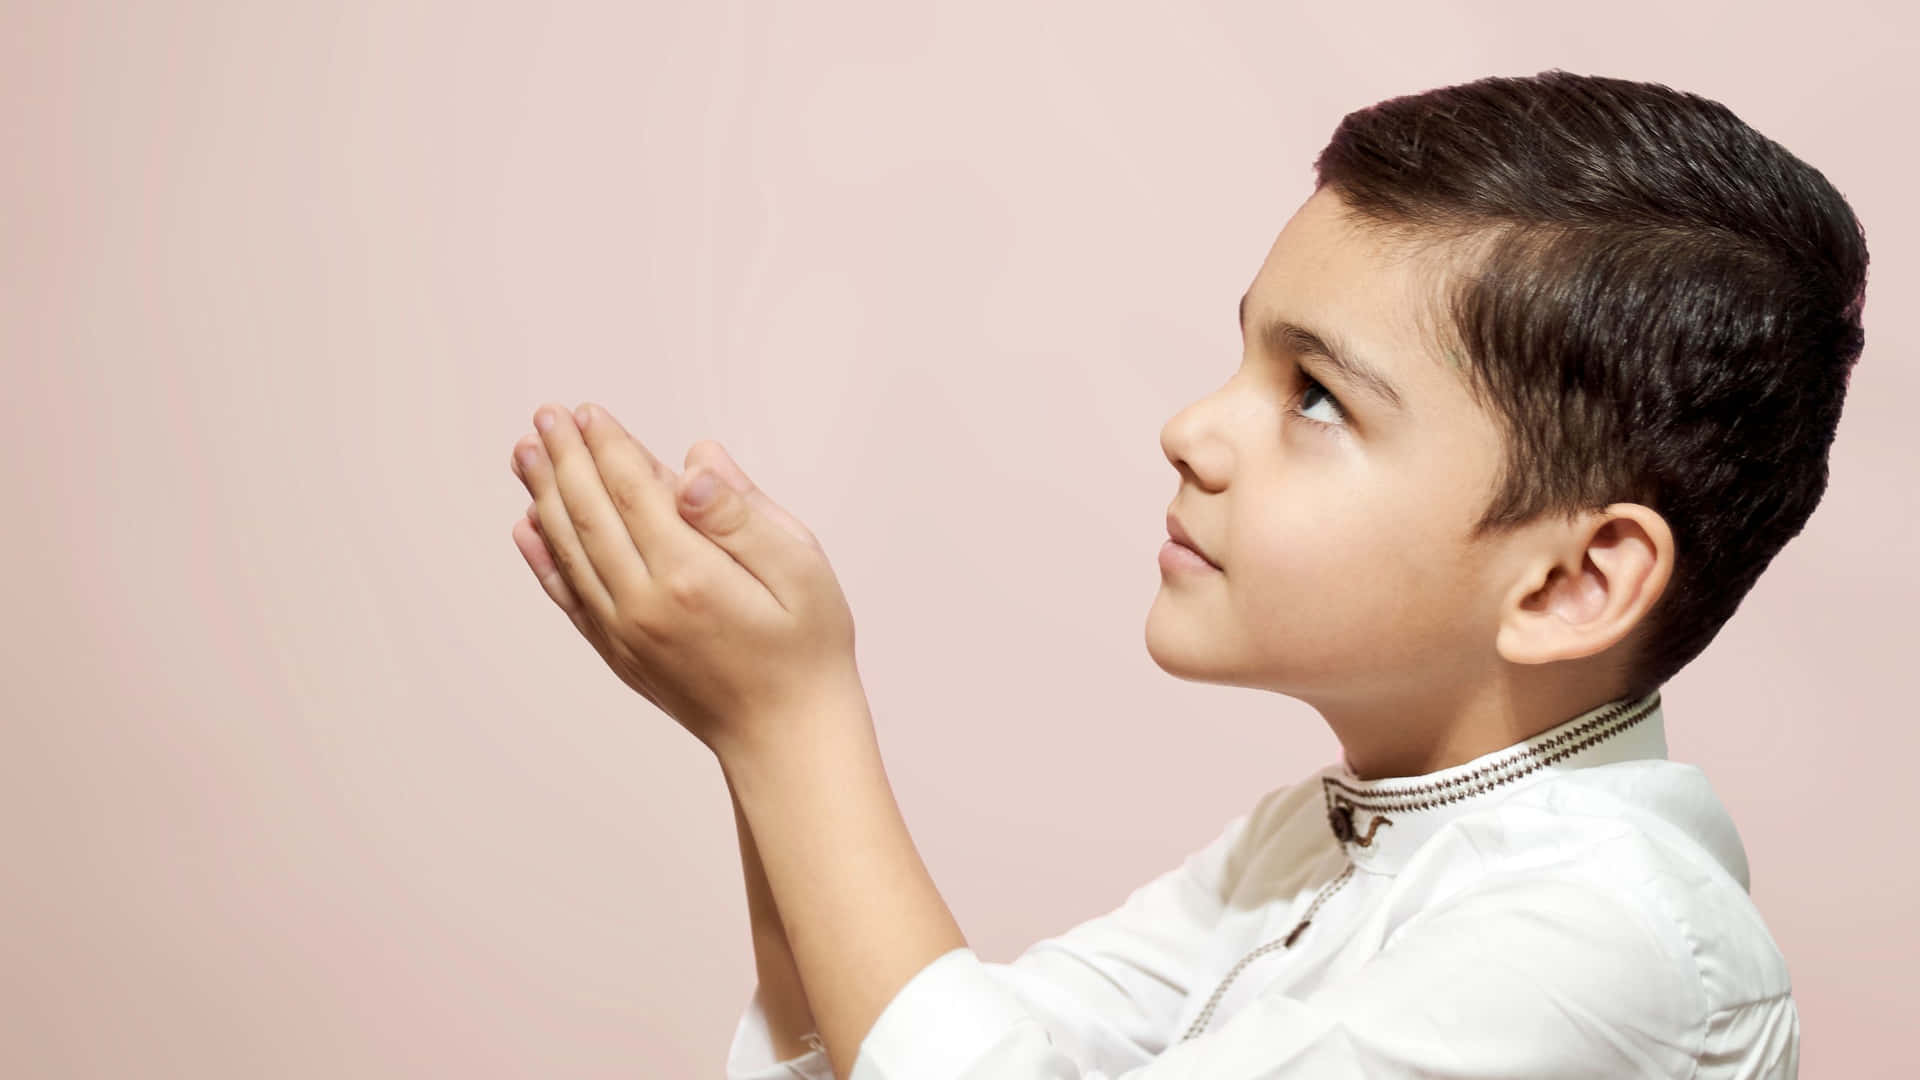 Muslim Boy Pink Background Wallpaper